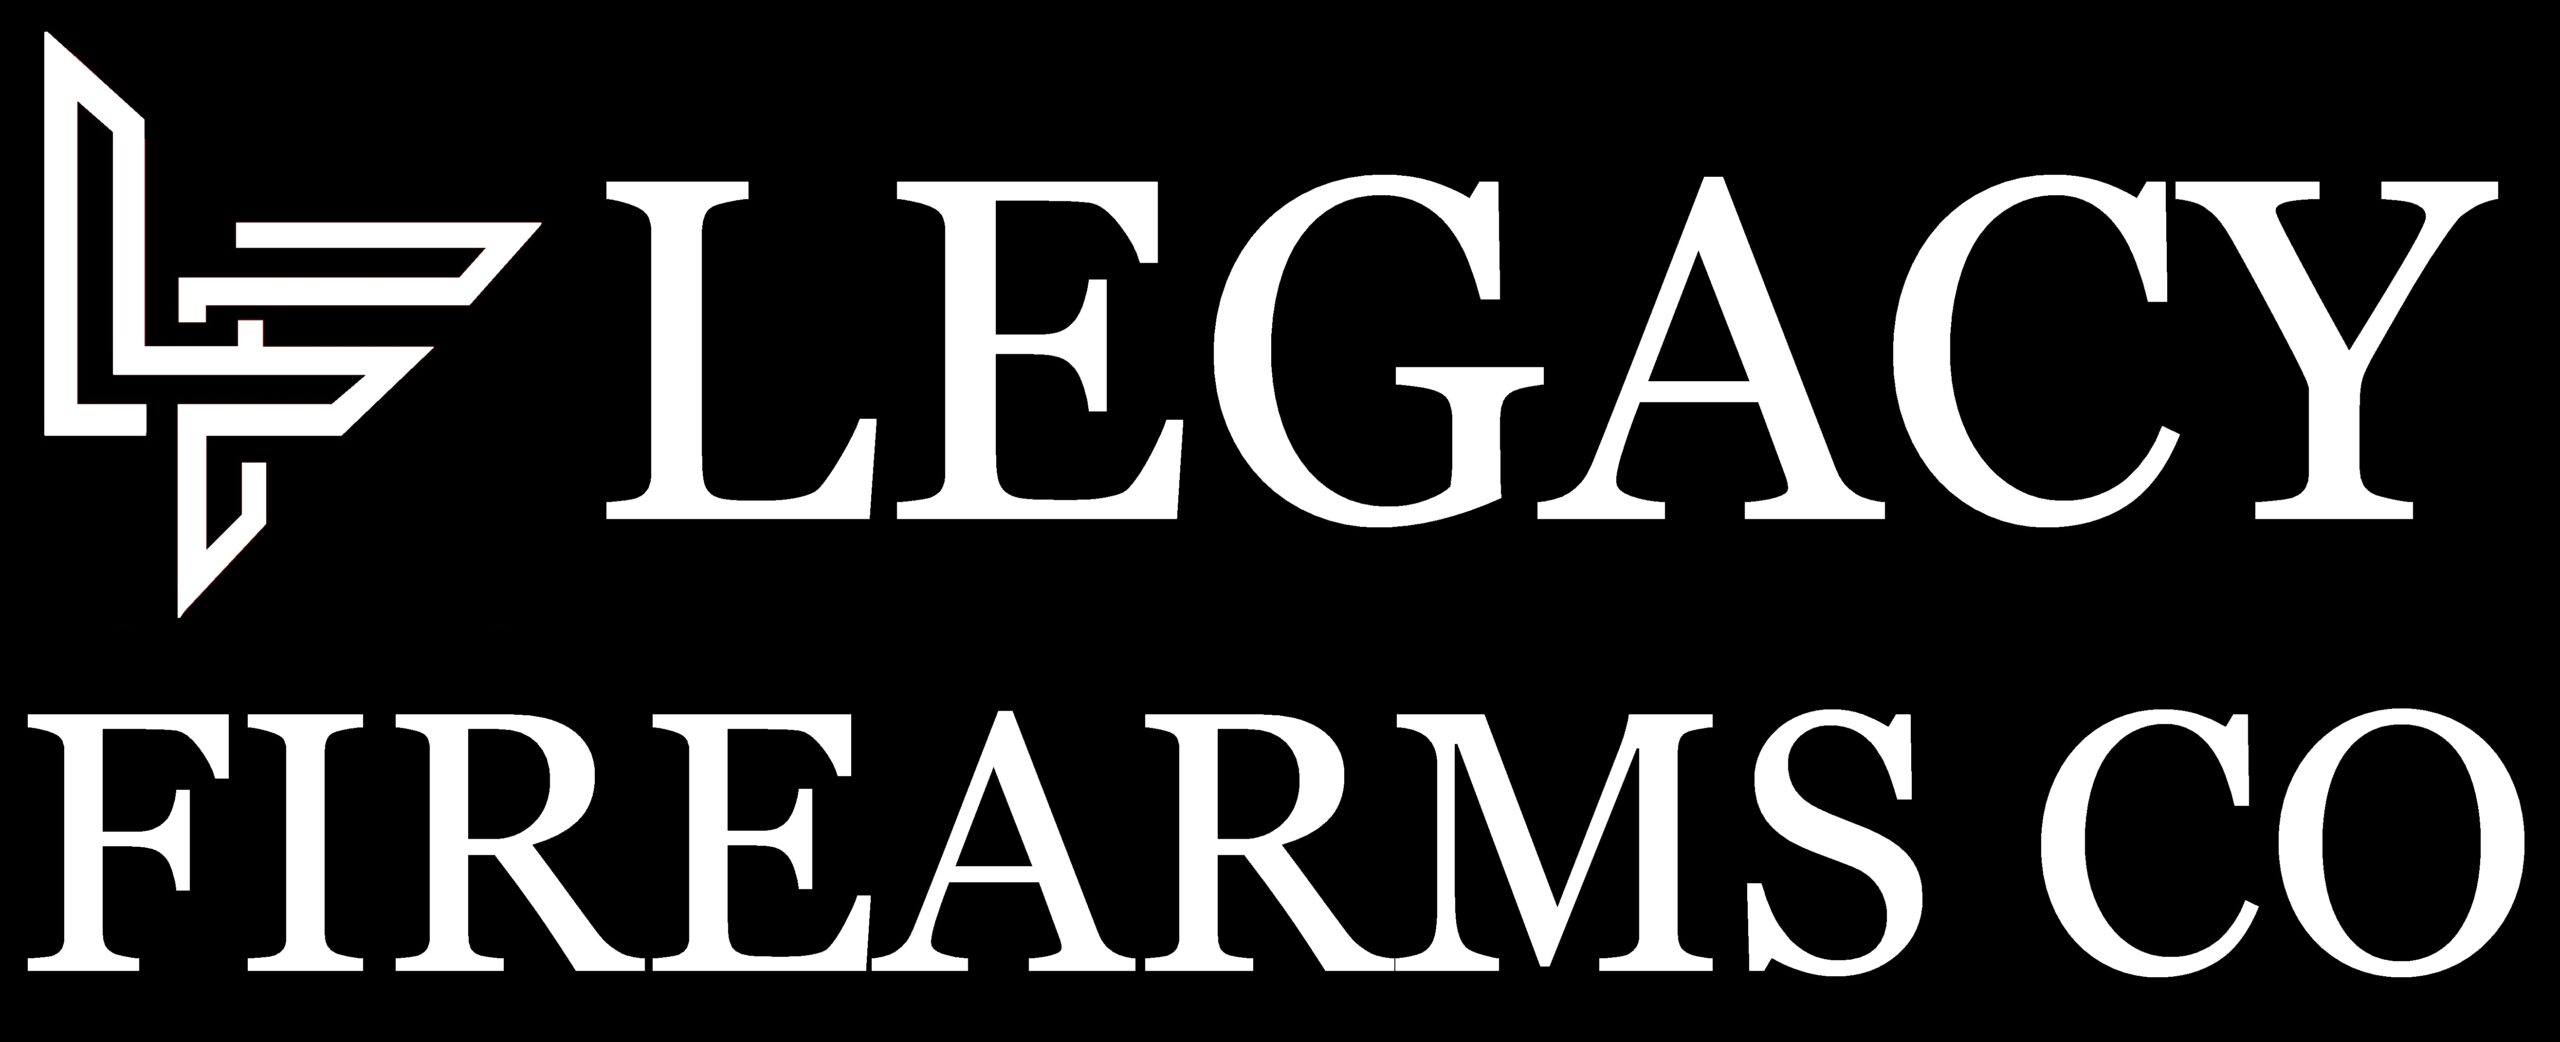 Legacy Firearms Co